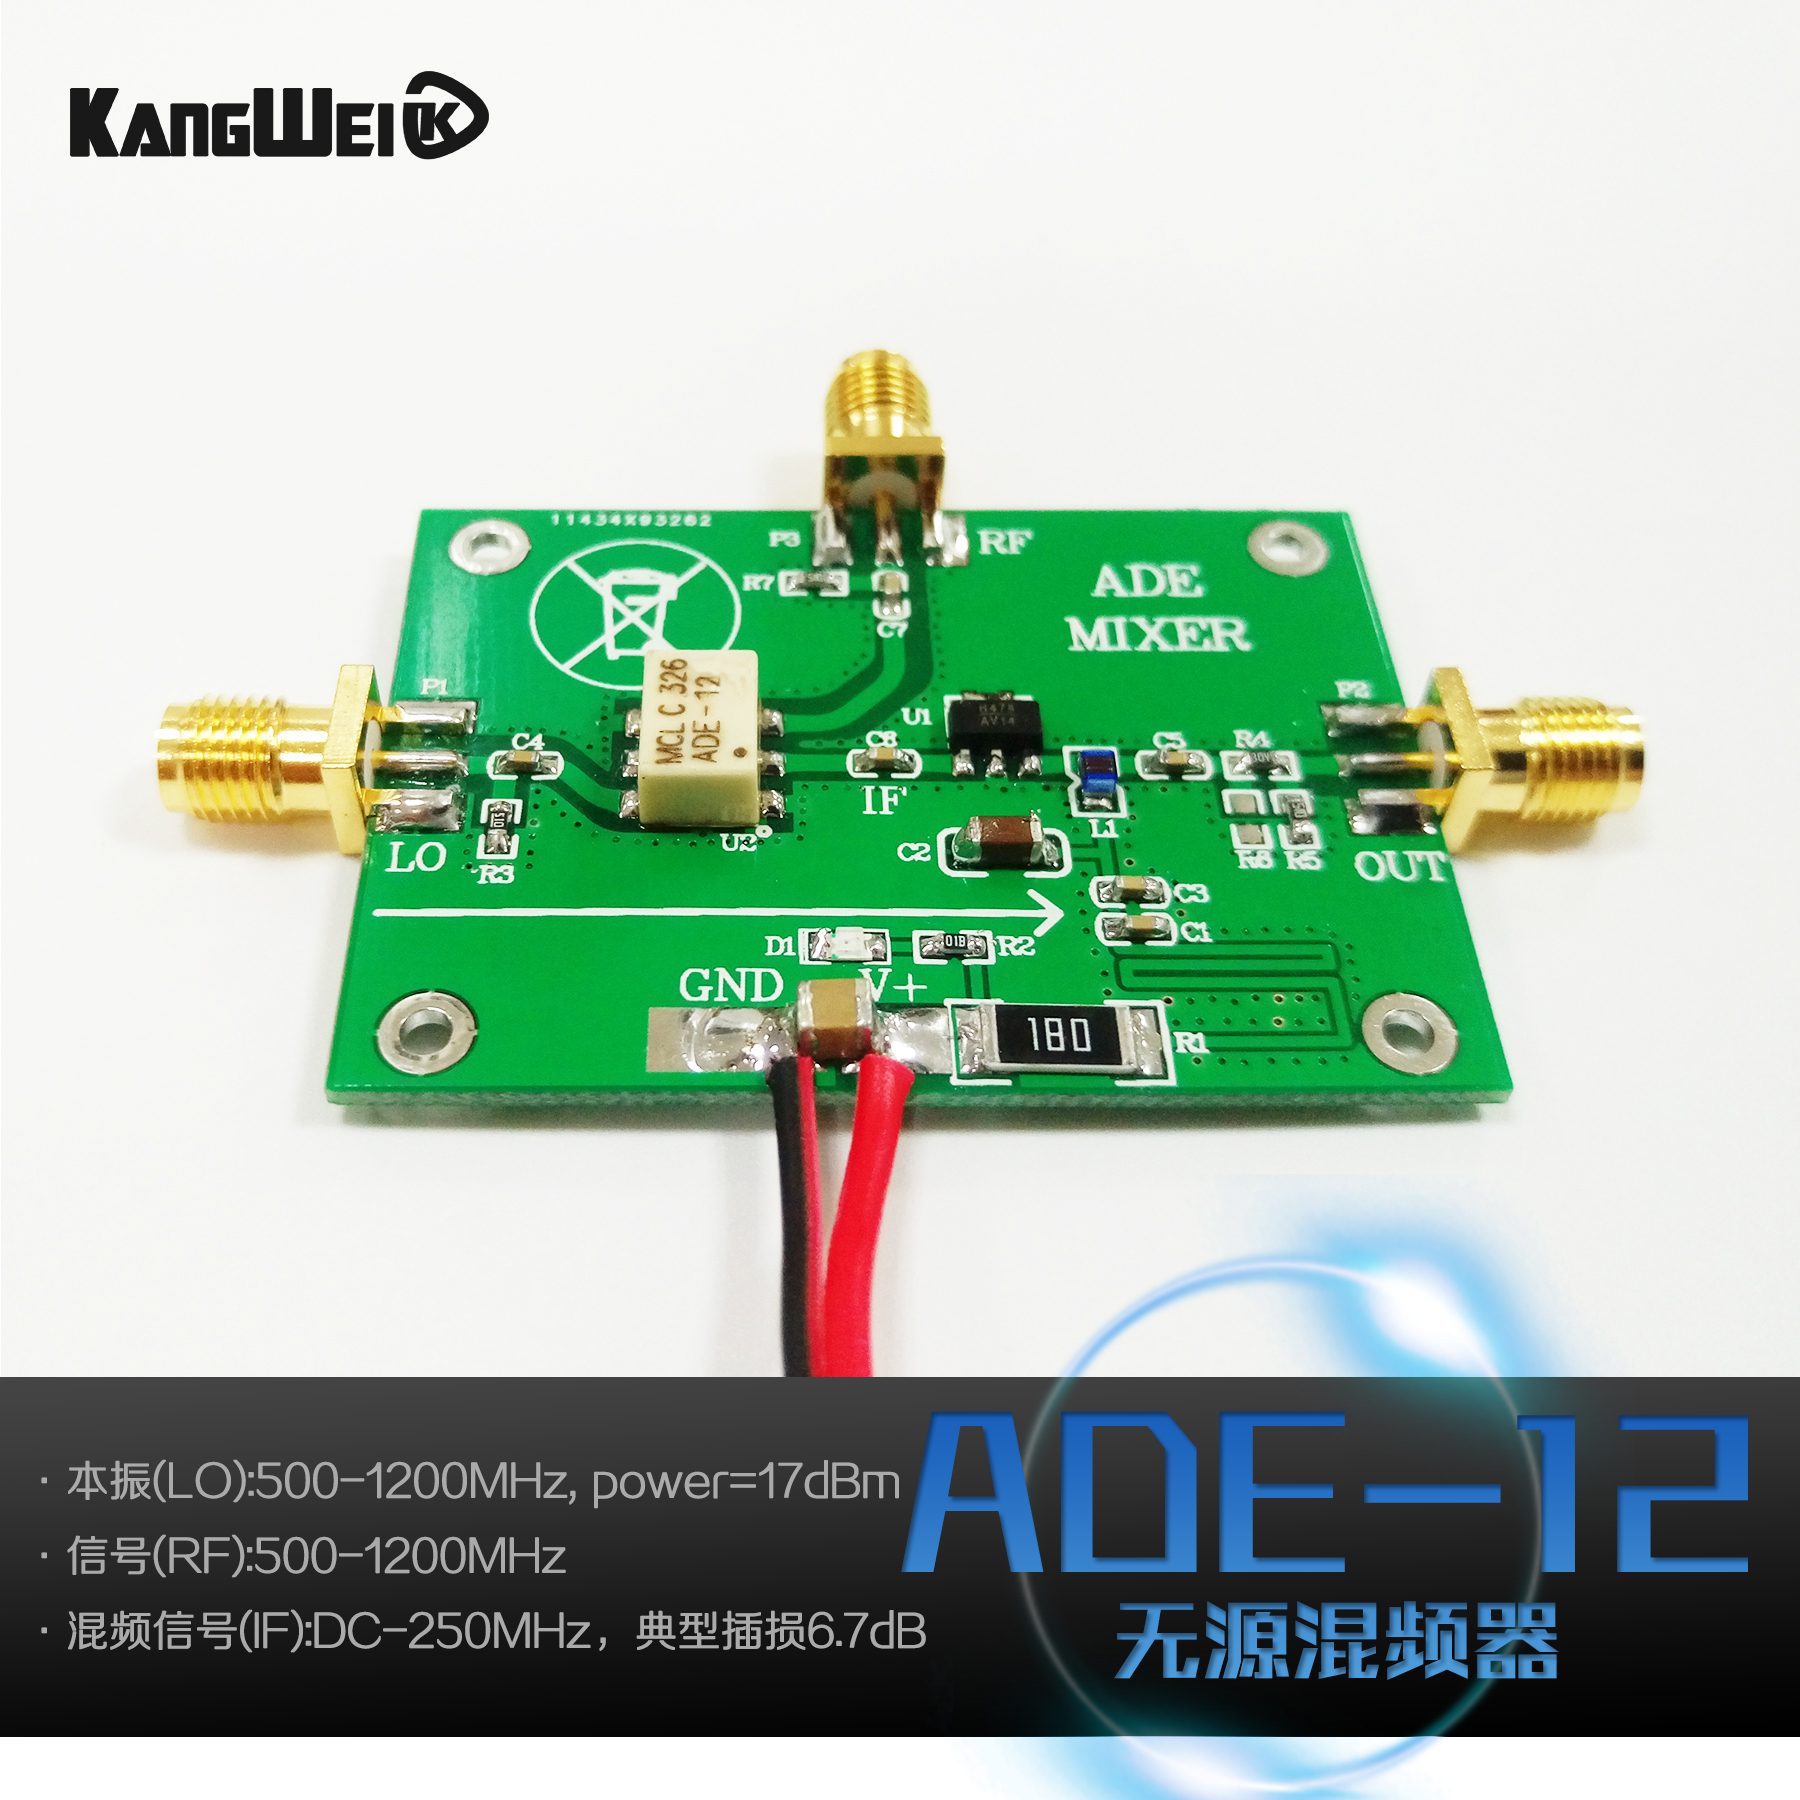 高频混频器 ADE-12H 无源混频器模块 康威科技 500M-1200MHz混频 电子元器件市场 其它元器件 原图主图